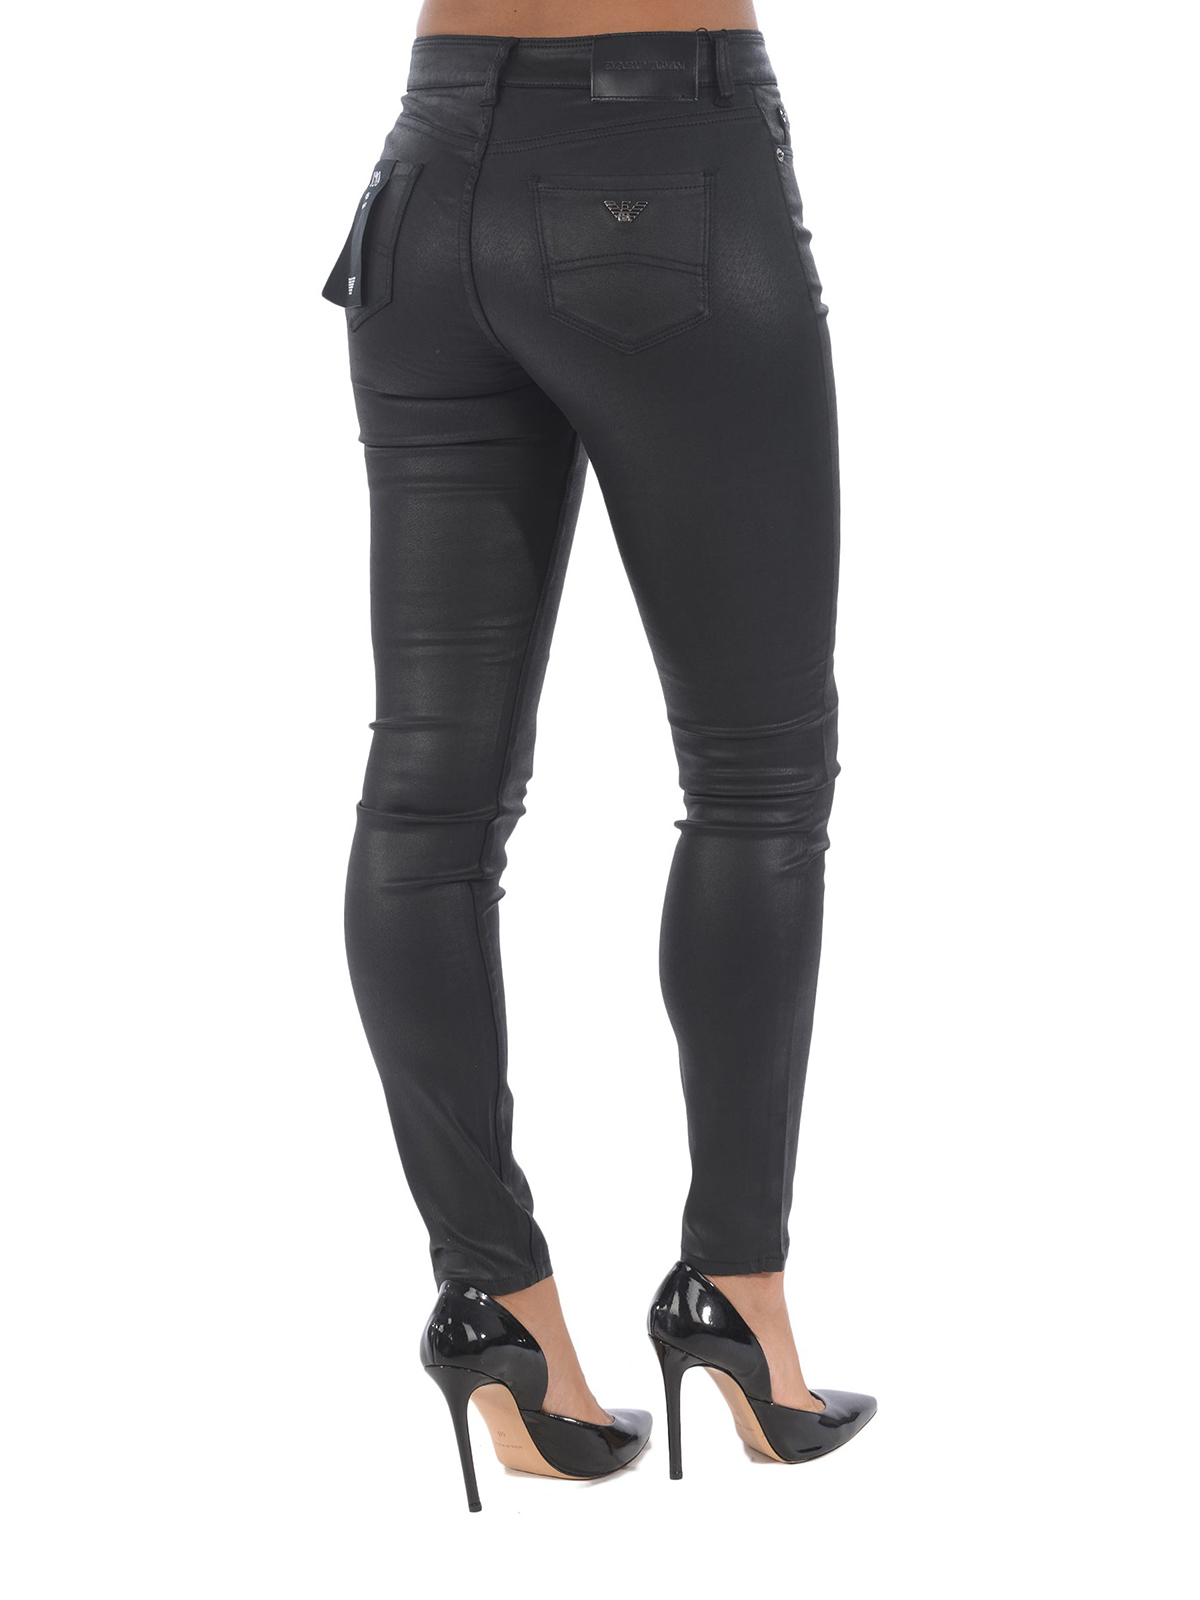 Skinny Emporio Armani - J20 black coated skinny jeans - 6G2J202NSWZ0999